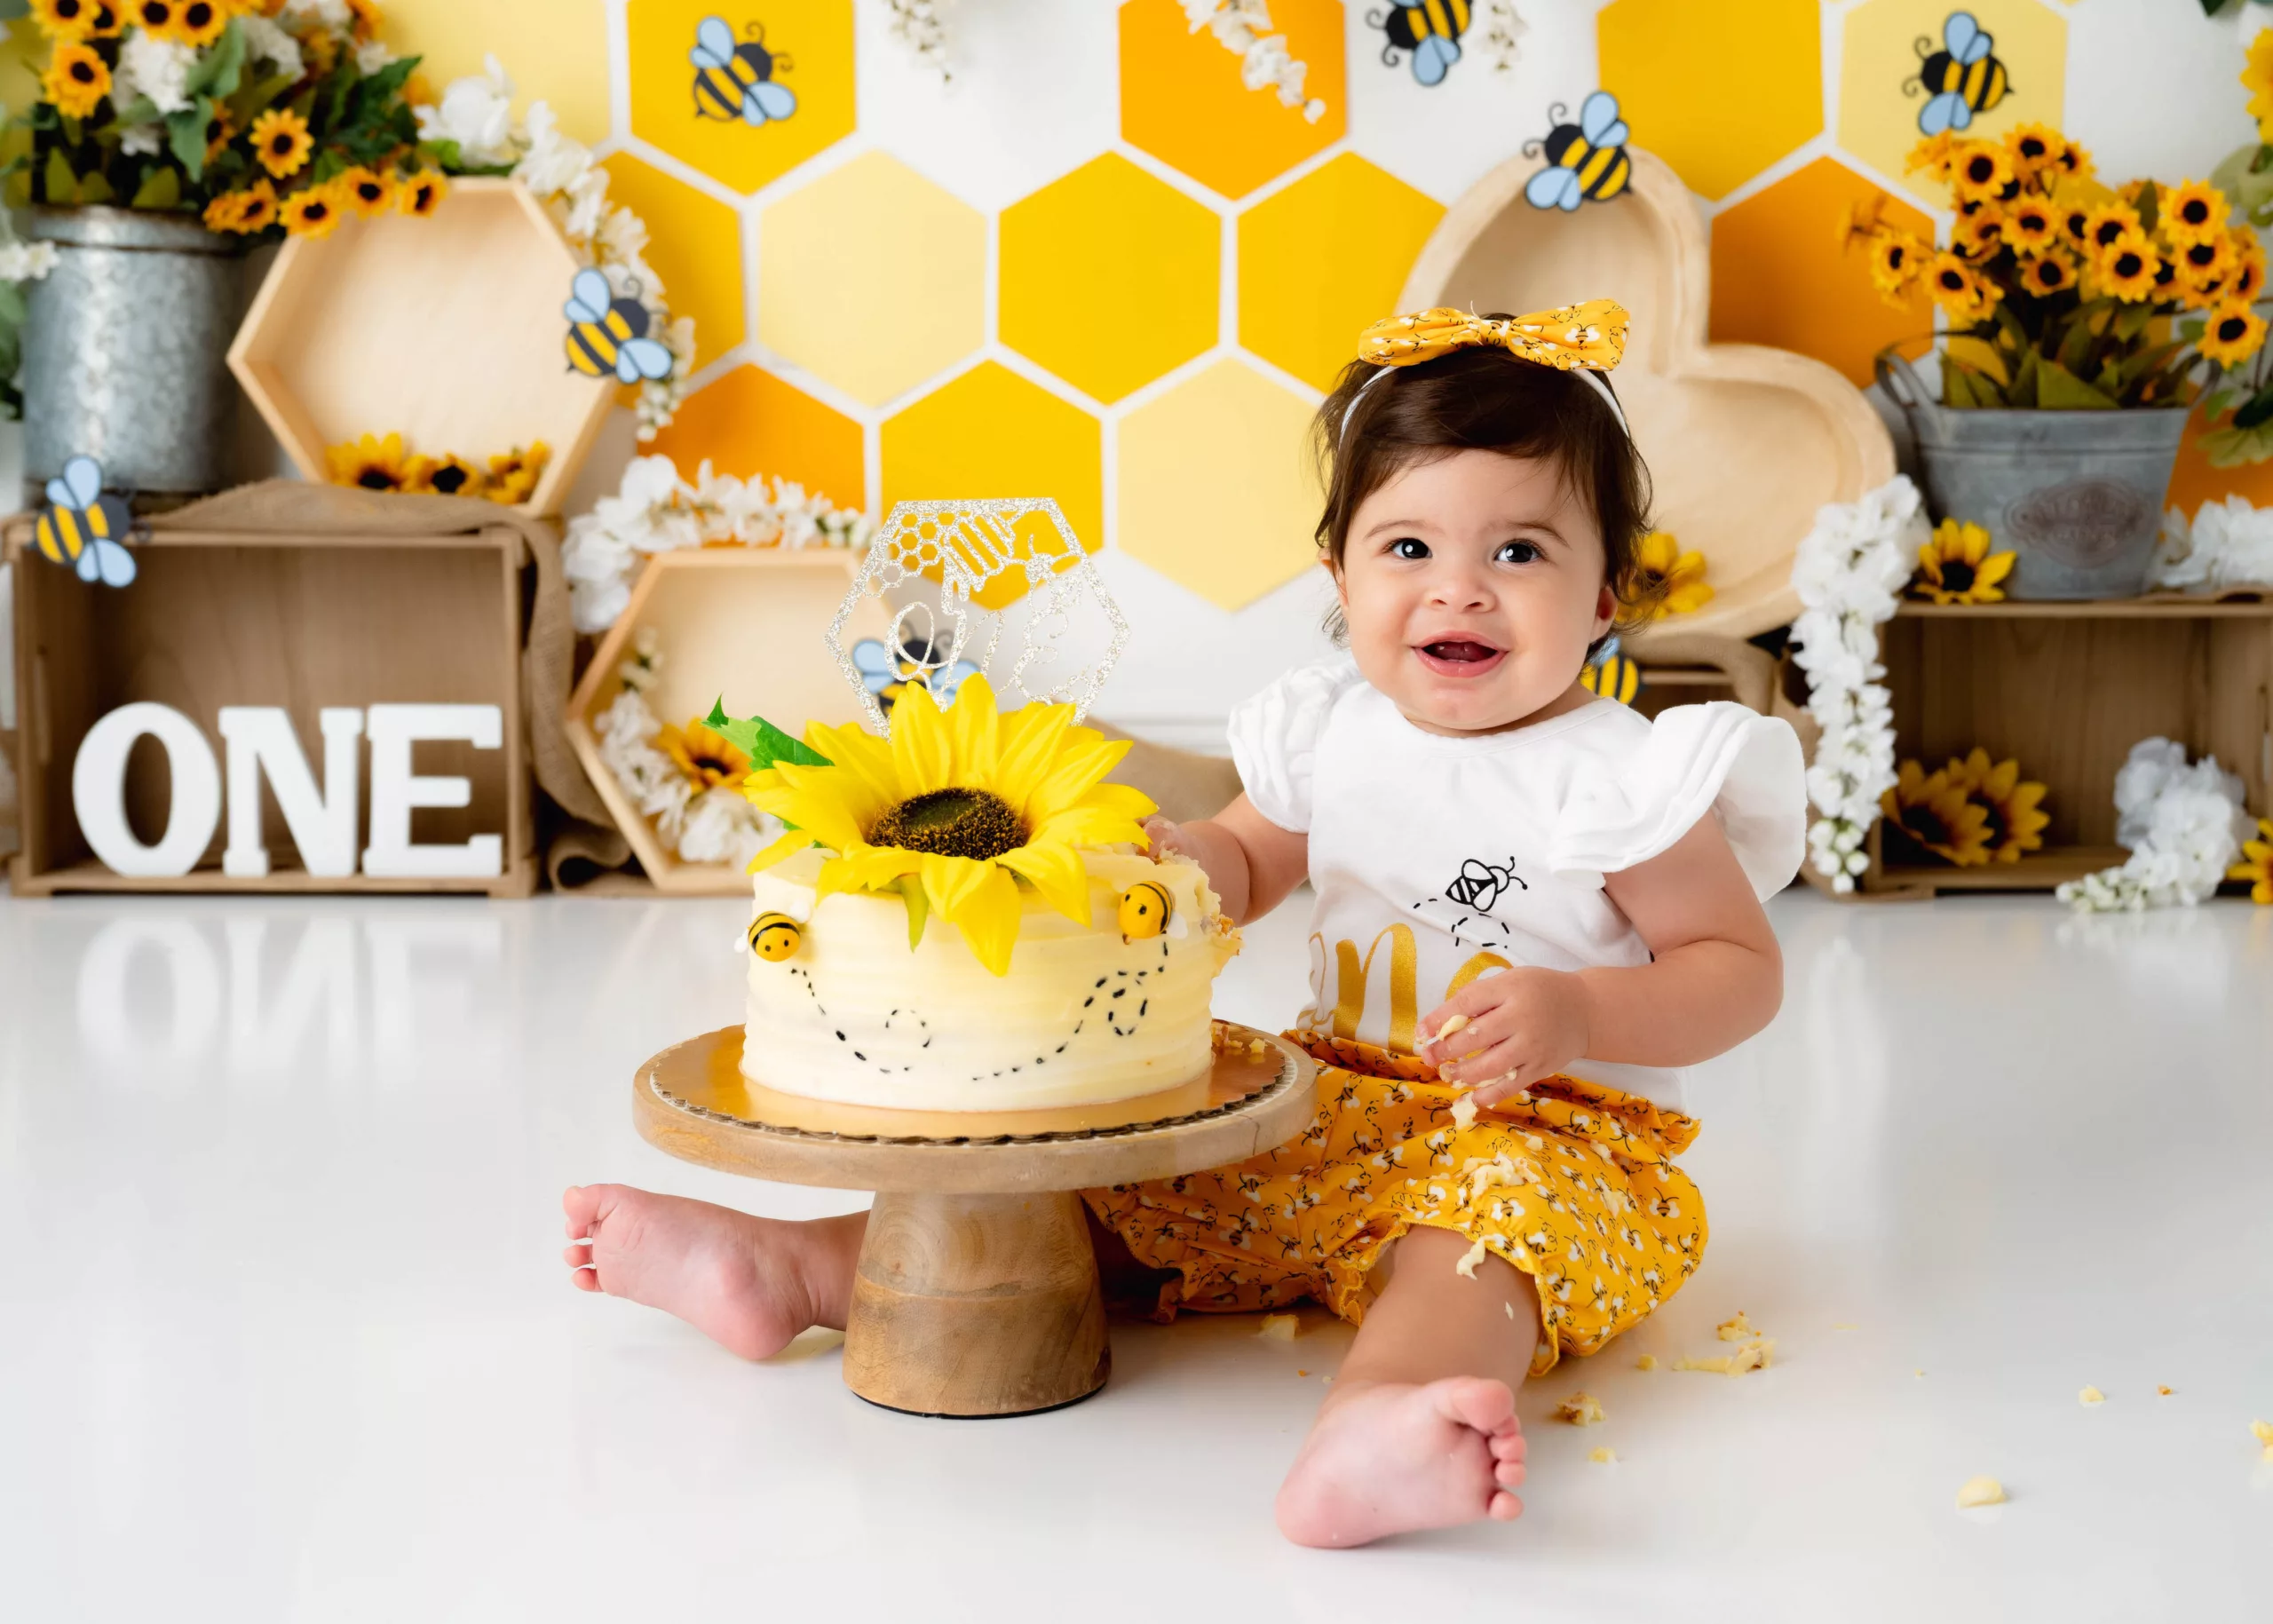 Orlando Girl Cake Smash 1st Birthday Photographer Photo Studio sunflowers yellow white brown bees honeycomb